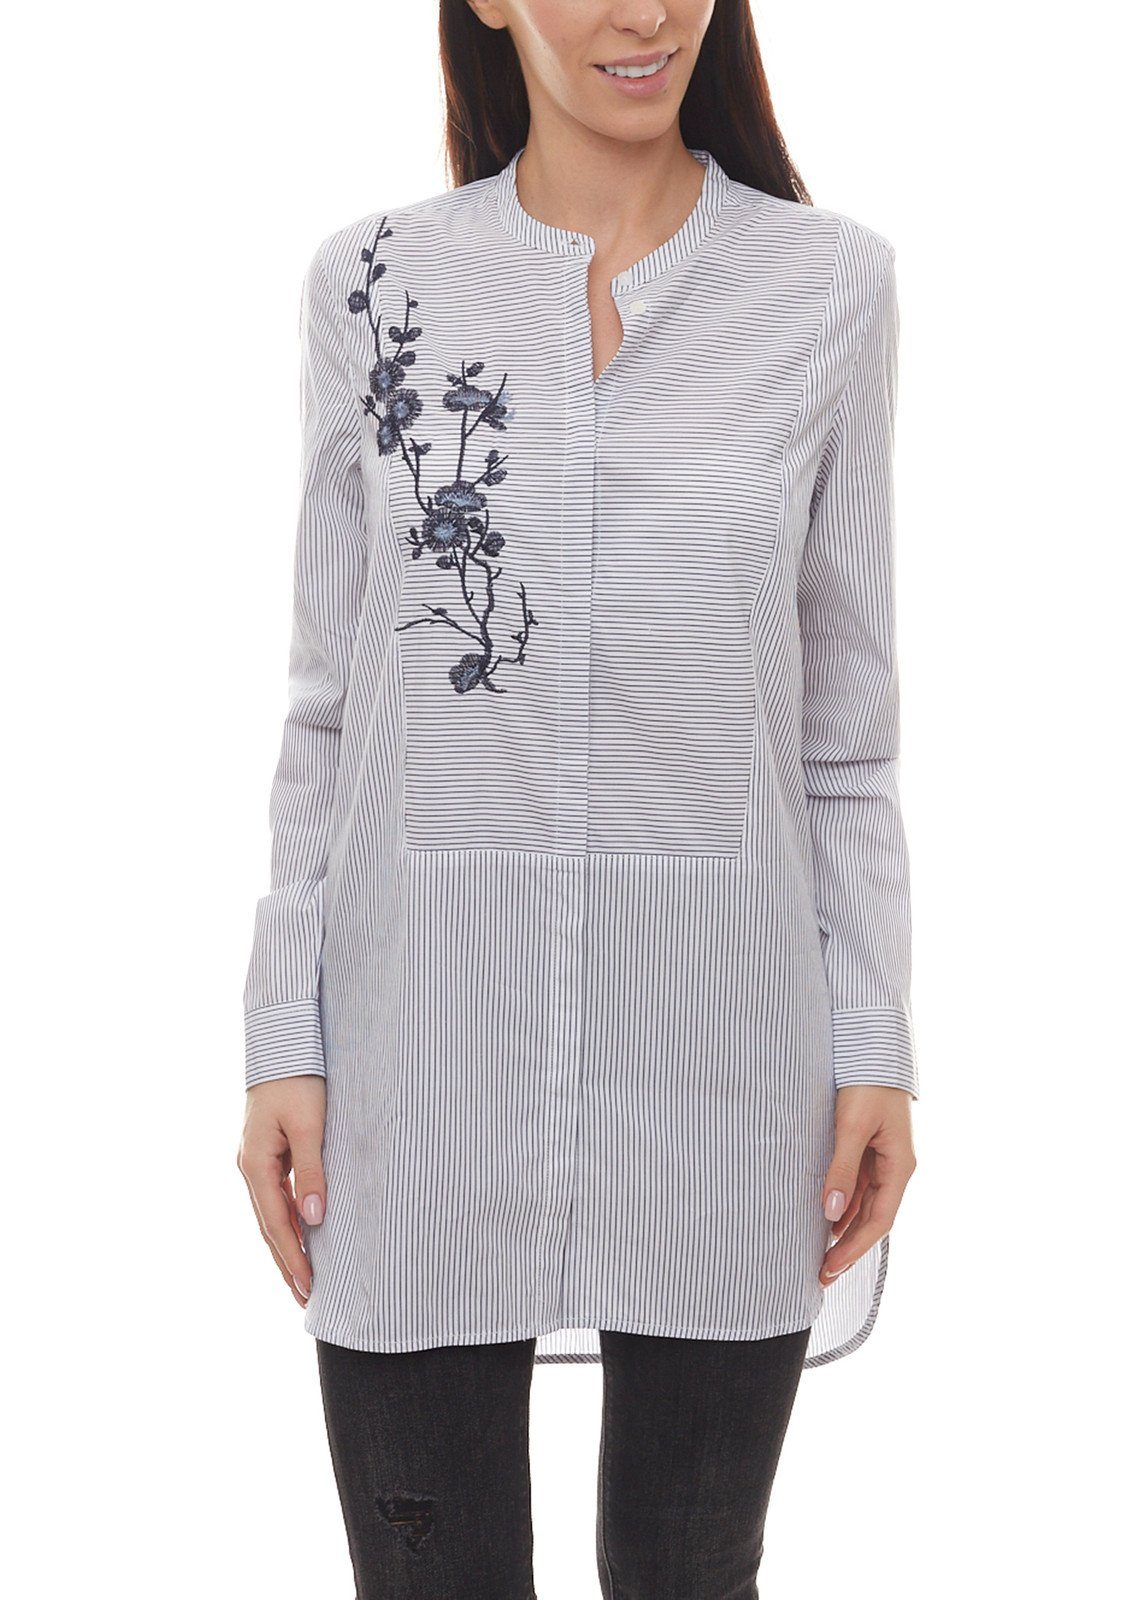 CLAIRE WOMAN Blusentop »CLAIRE WOMAN Bluse gestreifte Damen Sommer-Bluse  mit Blumen-Stickerei Freizeit-Bluse Weiß-Blau« online kaufen | OTTO